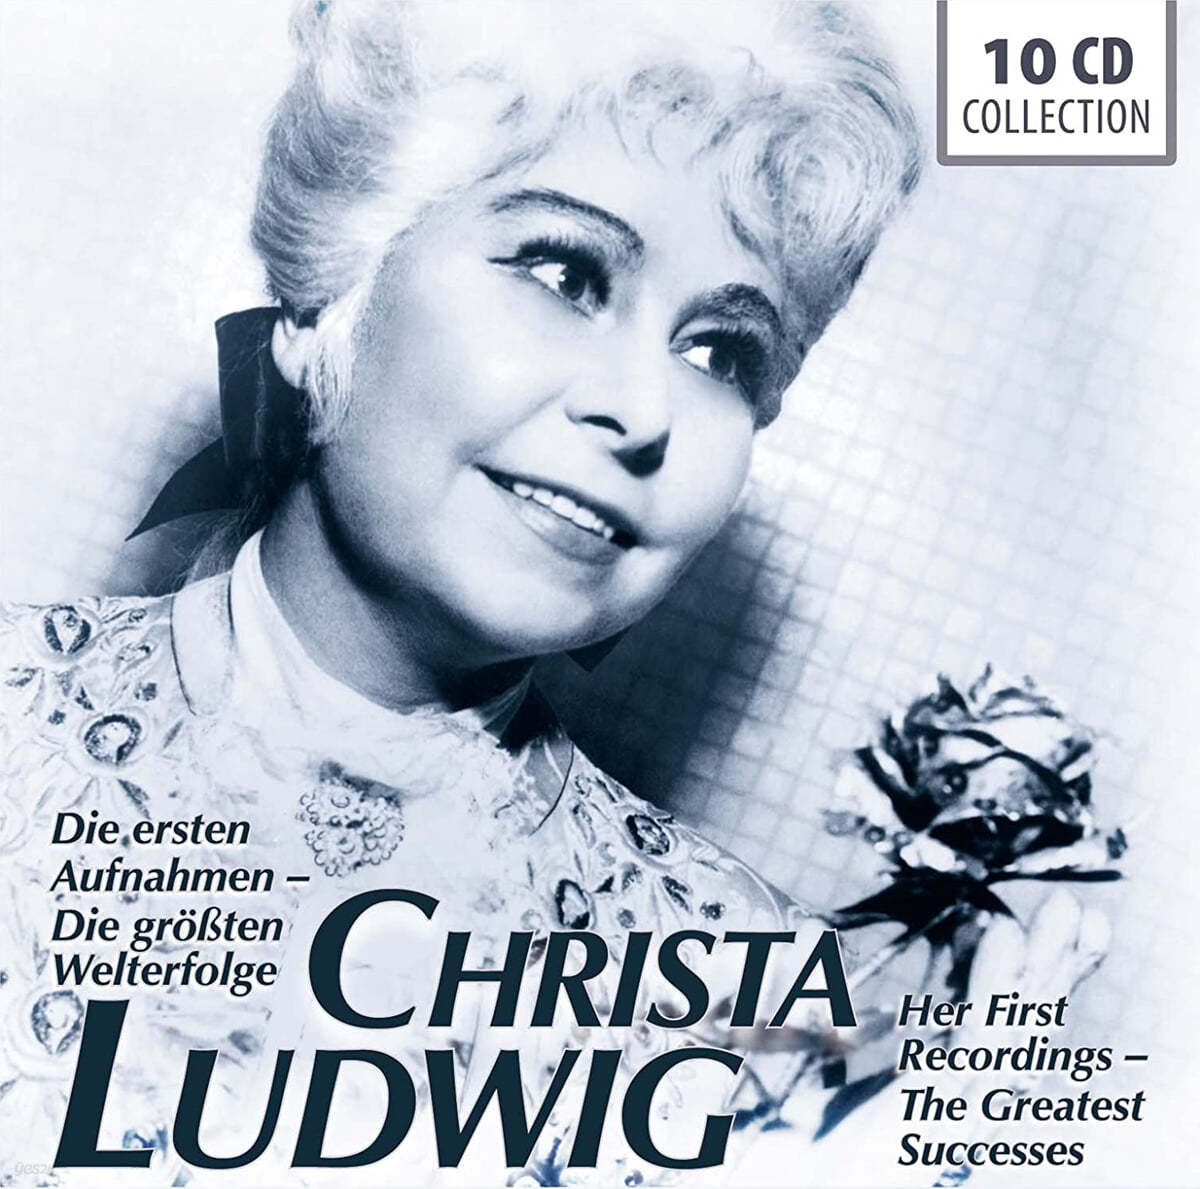 Christa Ludwig 크리스타 루드비히 - 최초 녹음에서 최고 까지 (Die ersten Aufnahmen / Die grossten Welterfolge) 